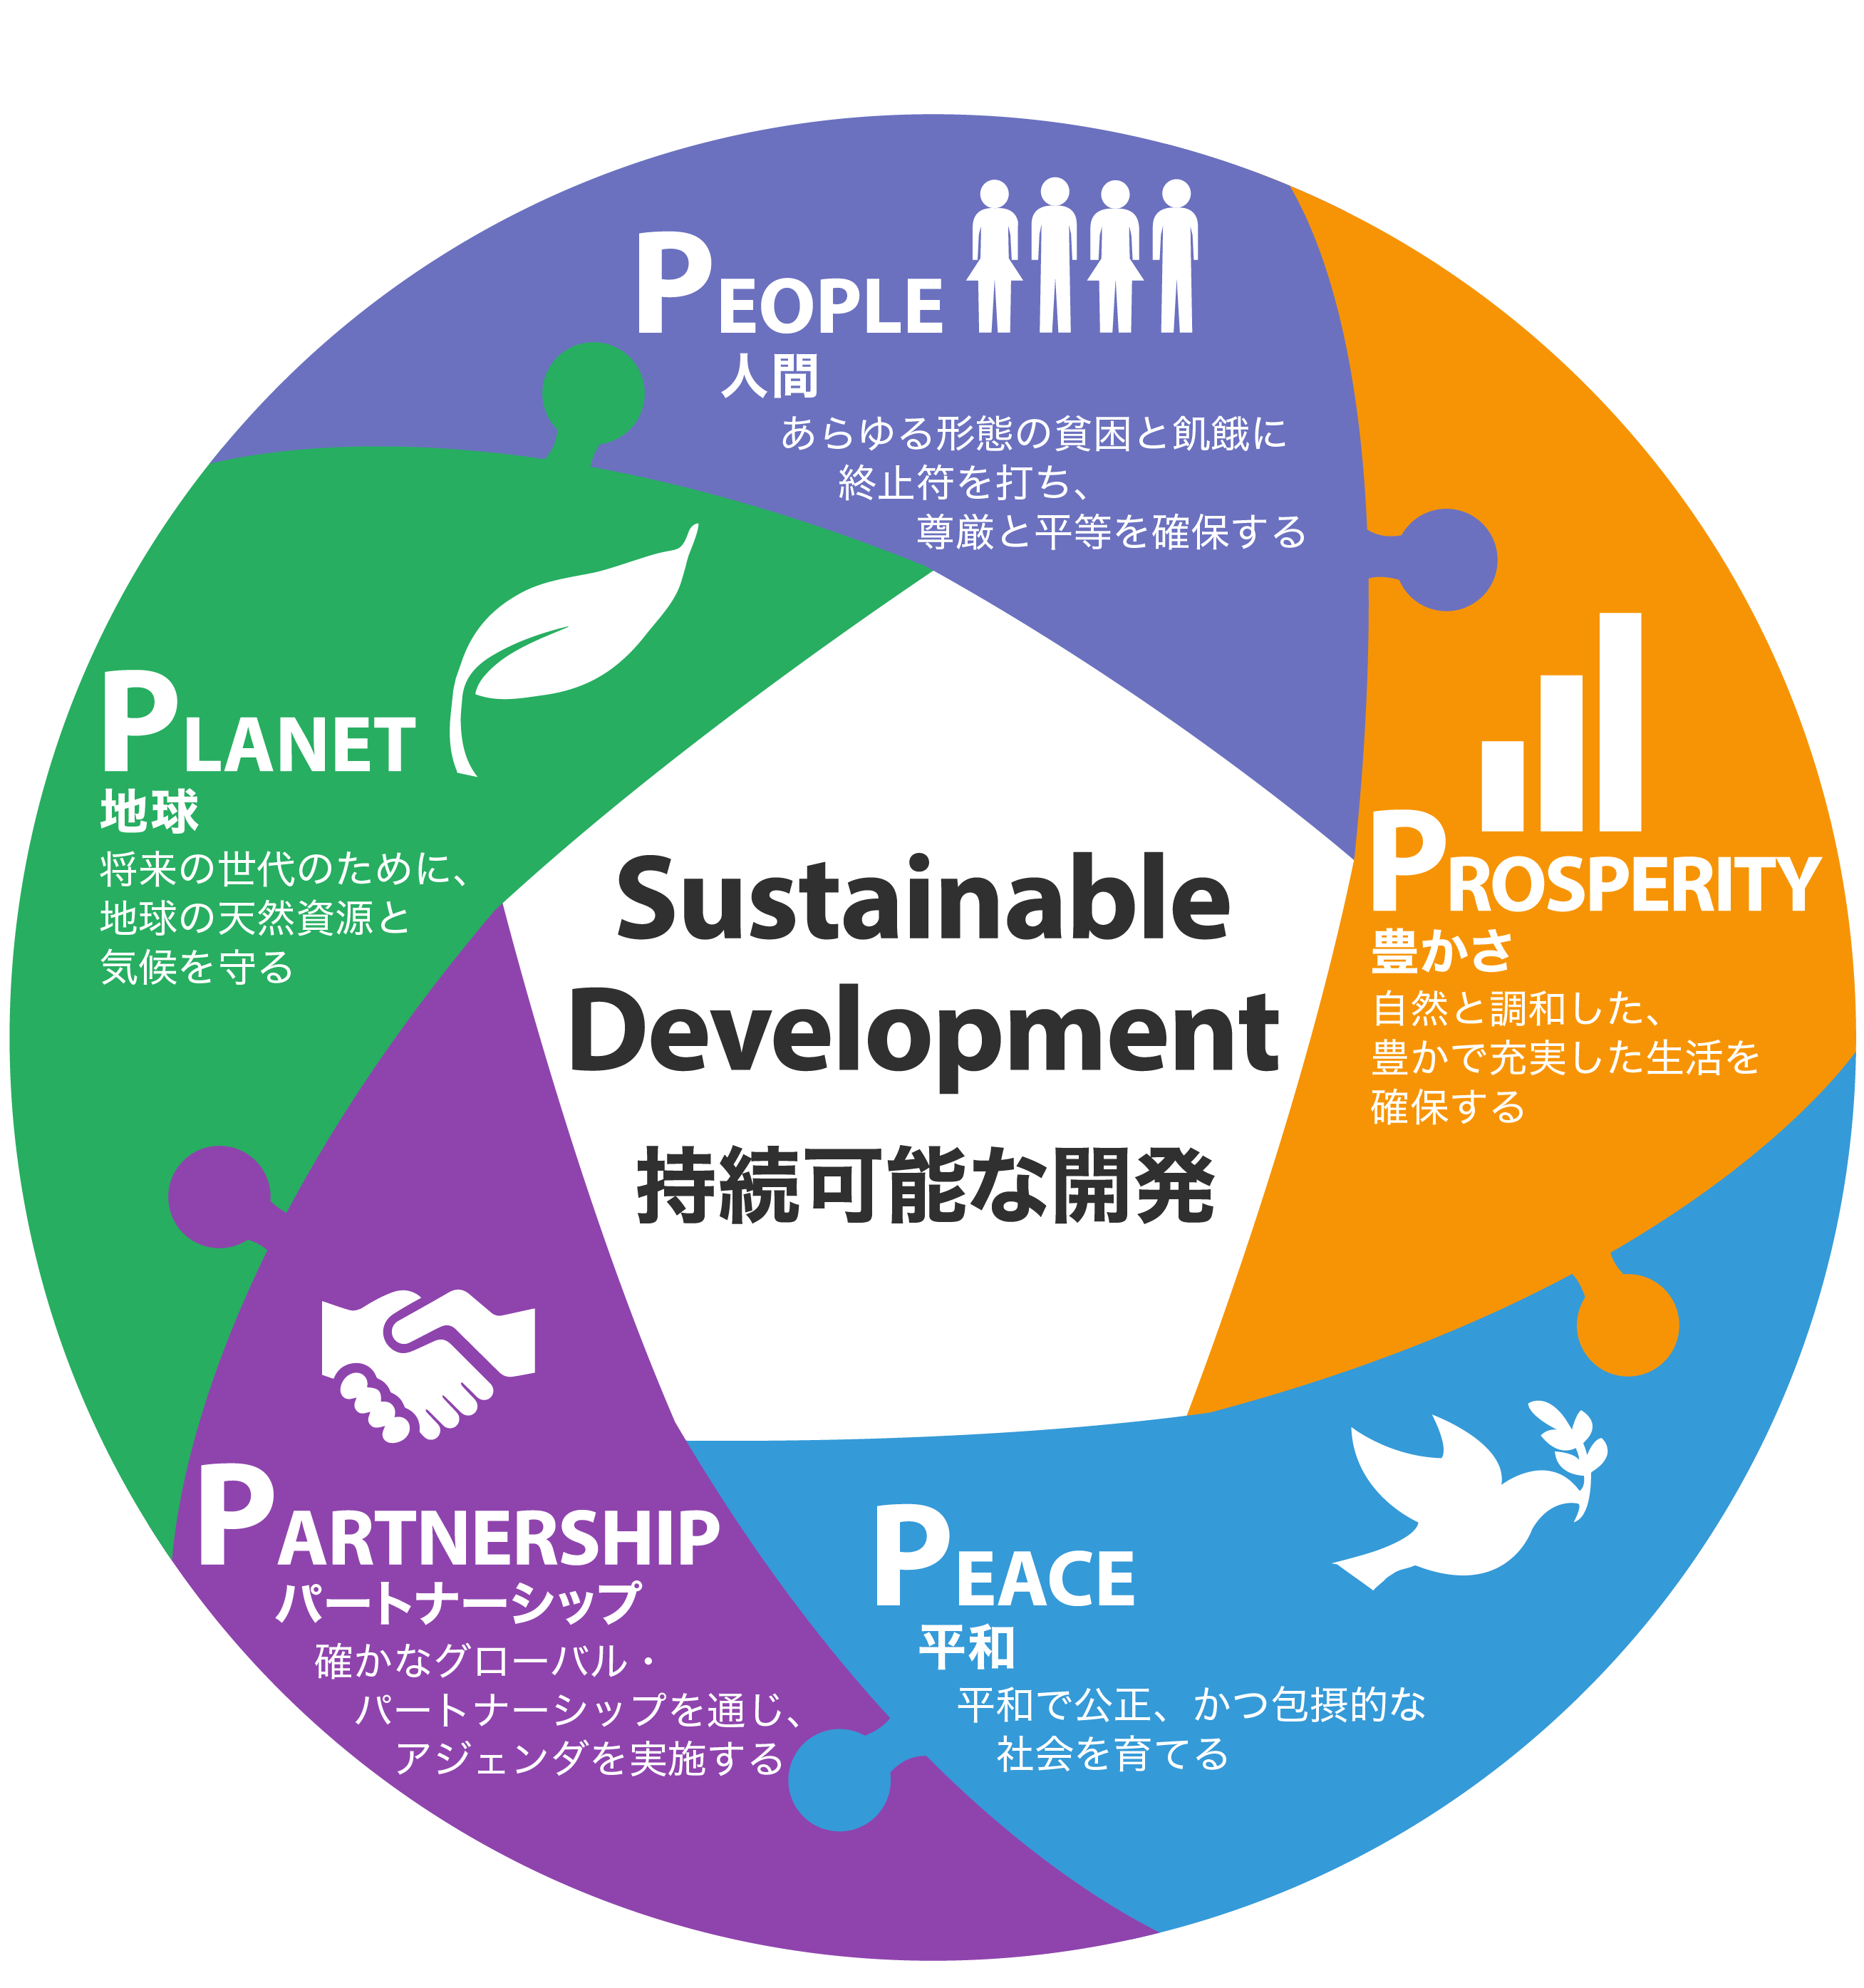 出典：SDGsを広めたい・教えたい方のための「虎の巻」(https://www.unic.or.jp/activities/economic_social_development/sustainable_development/2030agenda/)